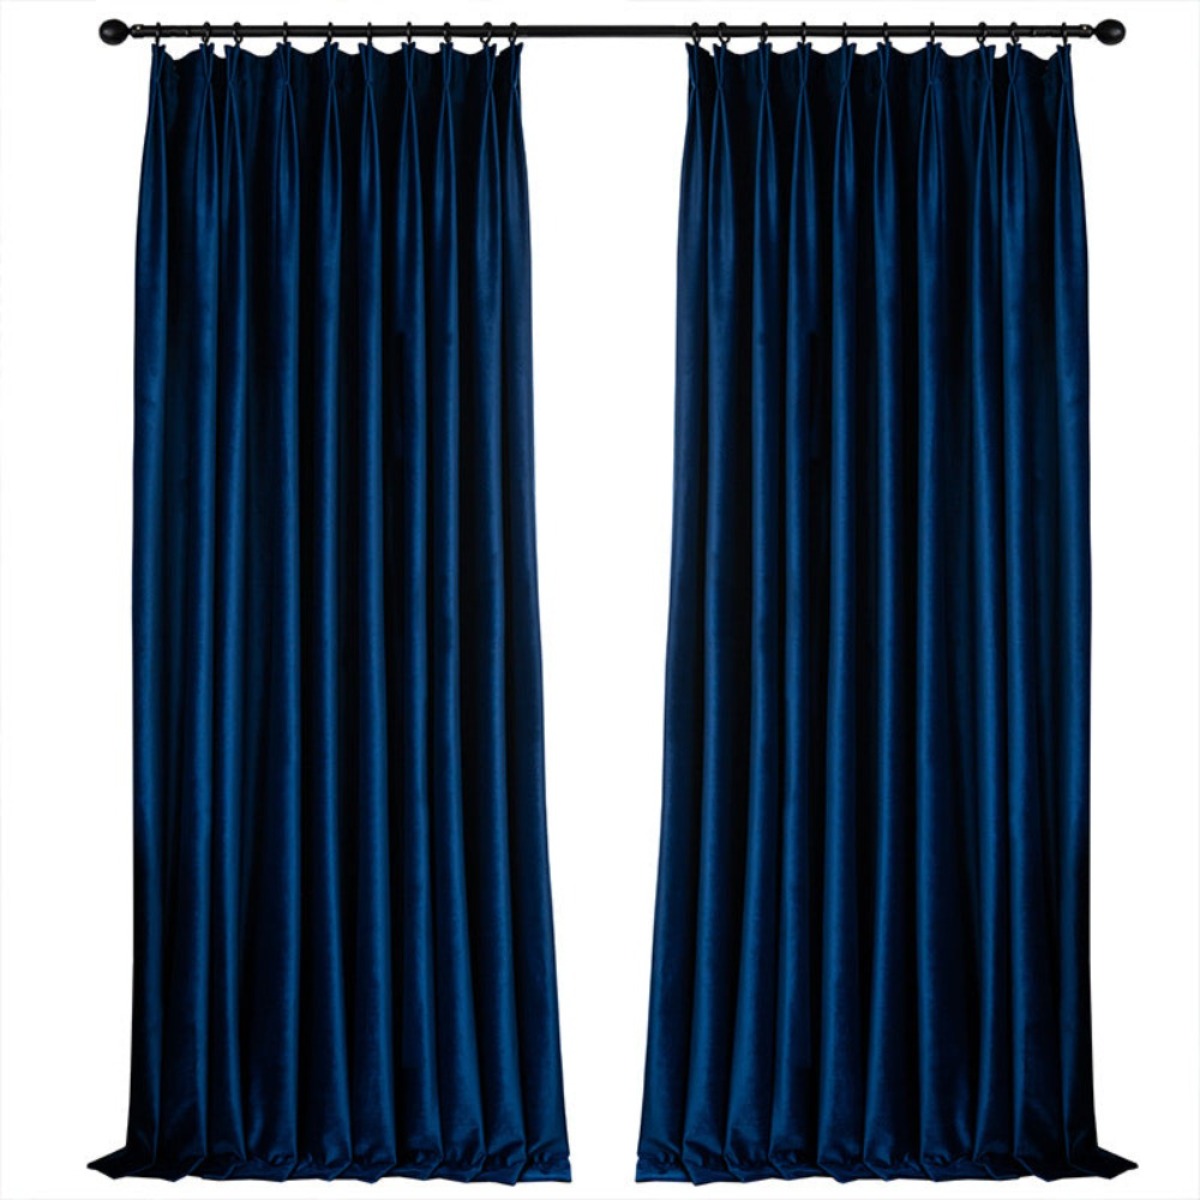 VELVETYWHISPER FLANNELLUXE BLUE Velvet Blackout Curtains